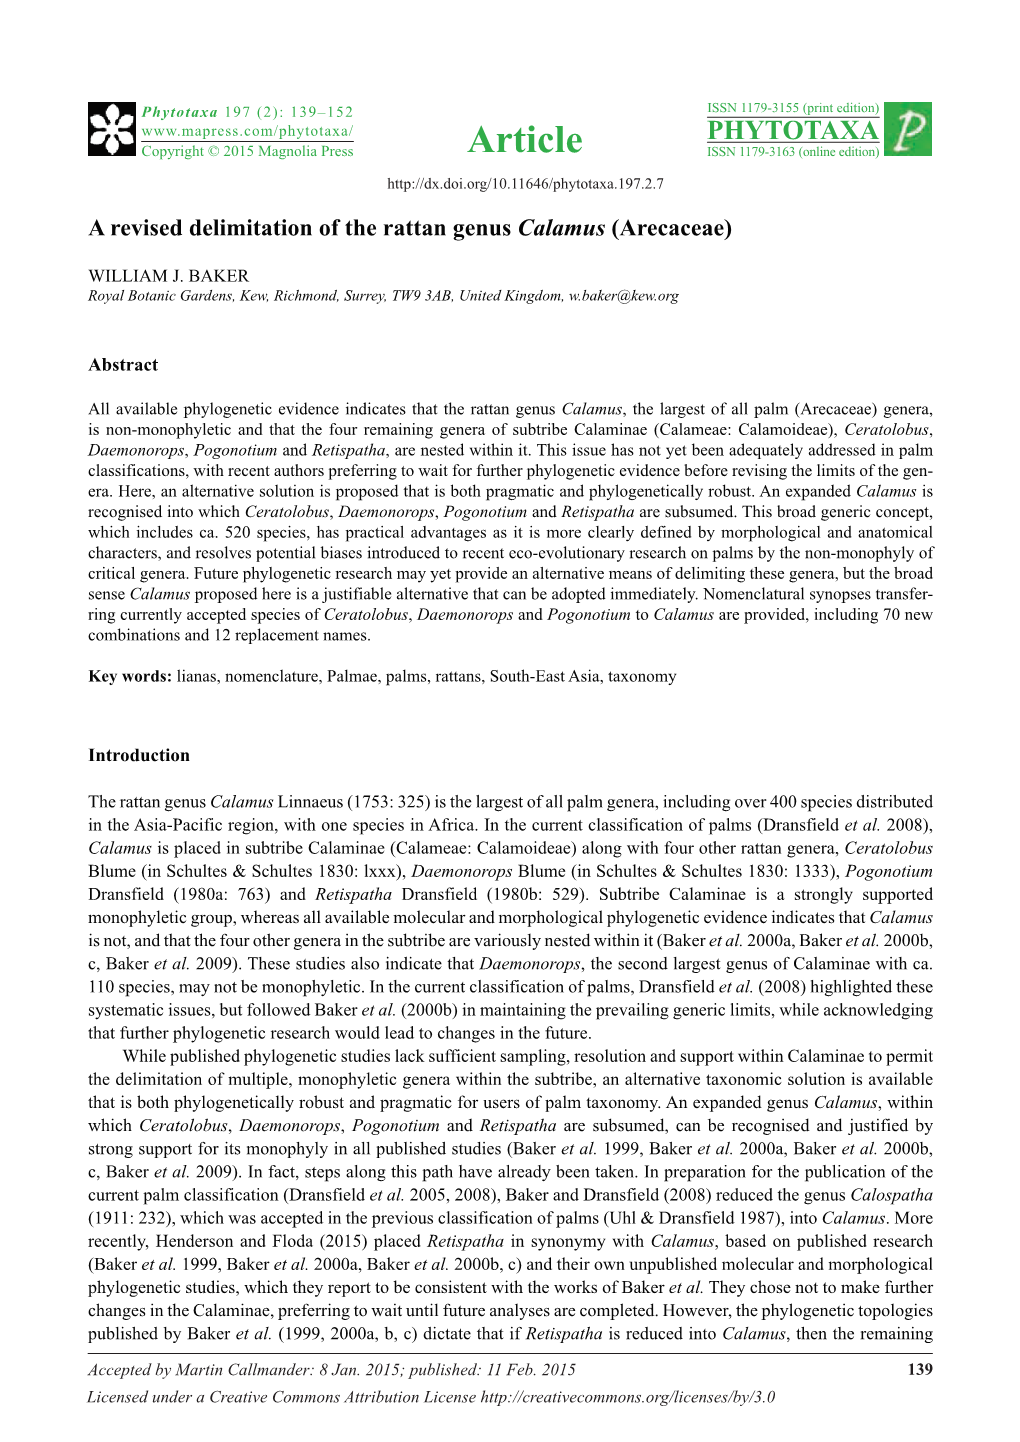 A Revised Delimitation of the Rattan Genus Calamus (Arecaceae)